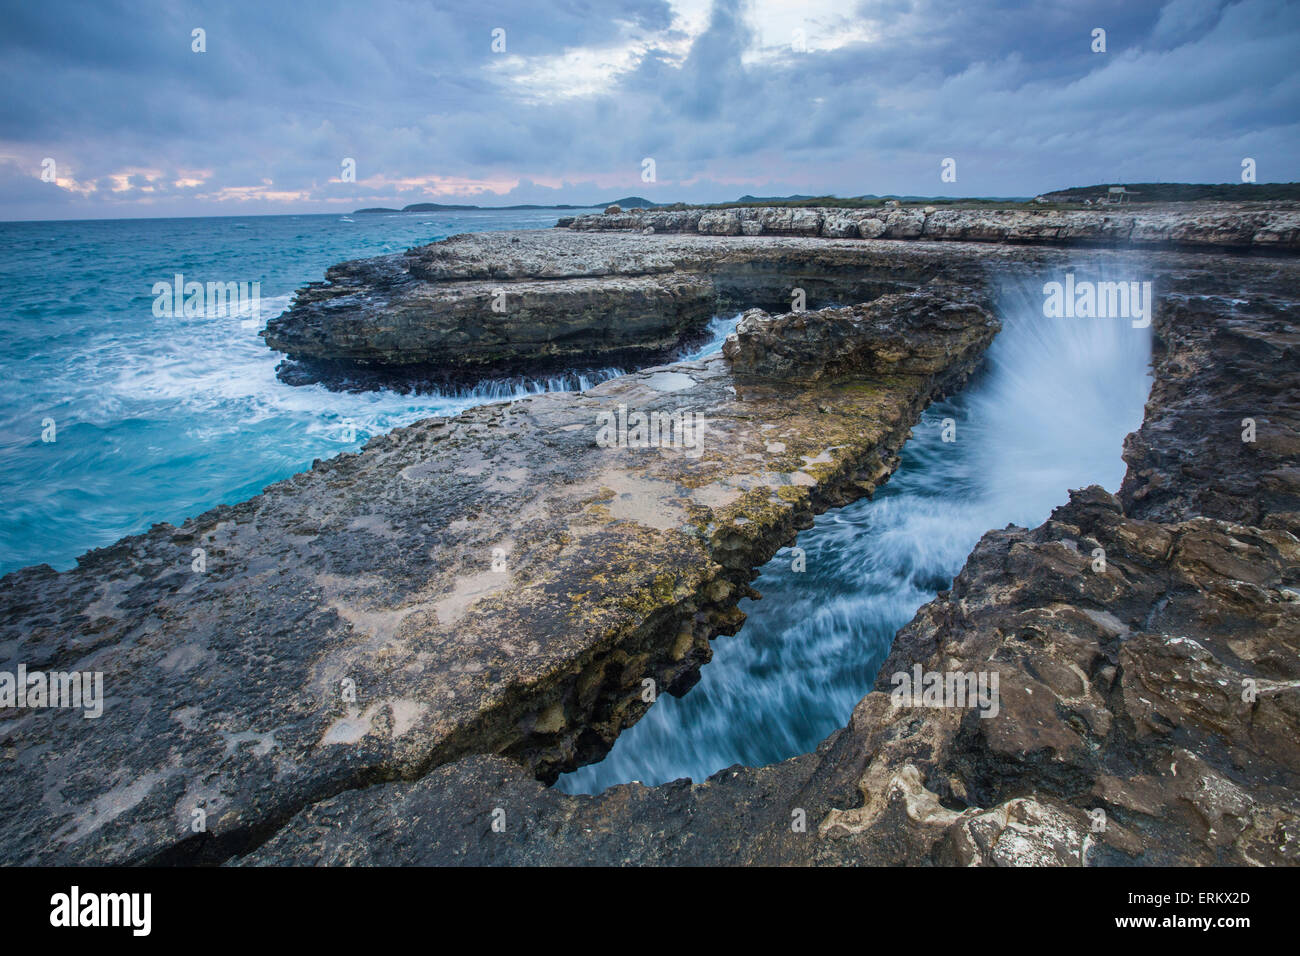 Devils Bridge géologique, une arche naturelle creusée par la mer à partir de calcaire dur et mou ledges, Antigua Banque D'Images